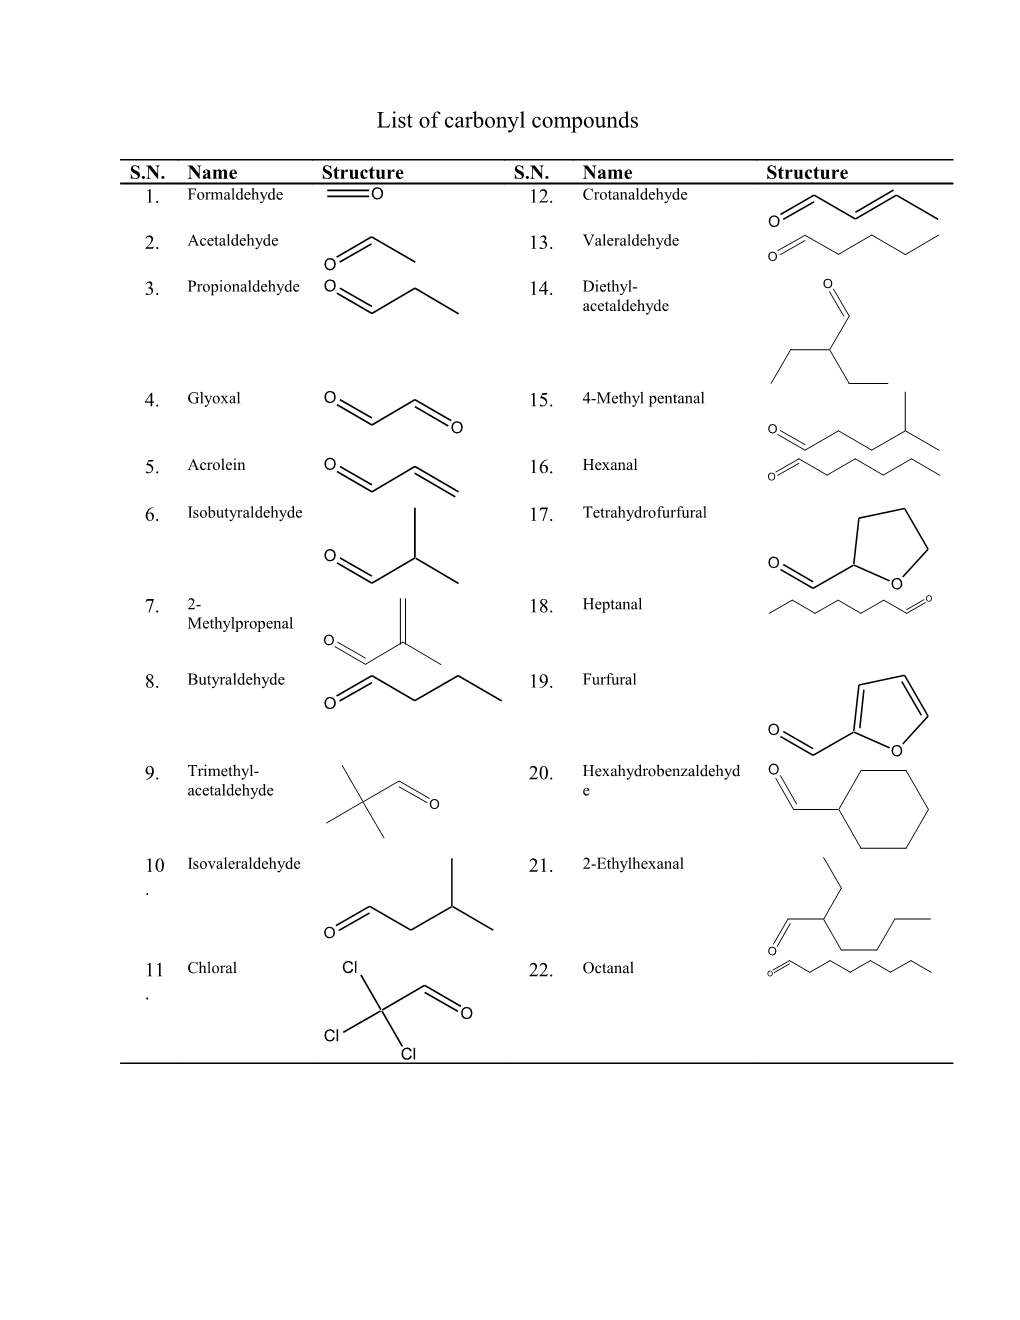 List of Carbonyl Compounds